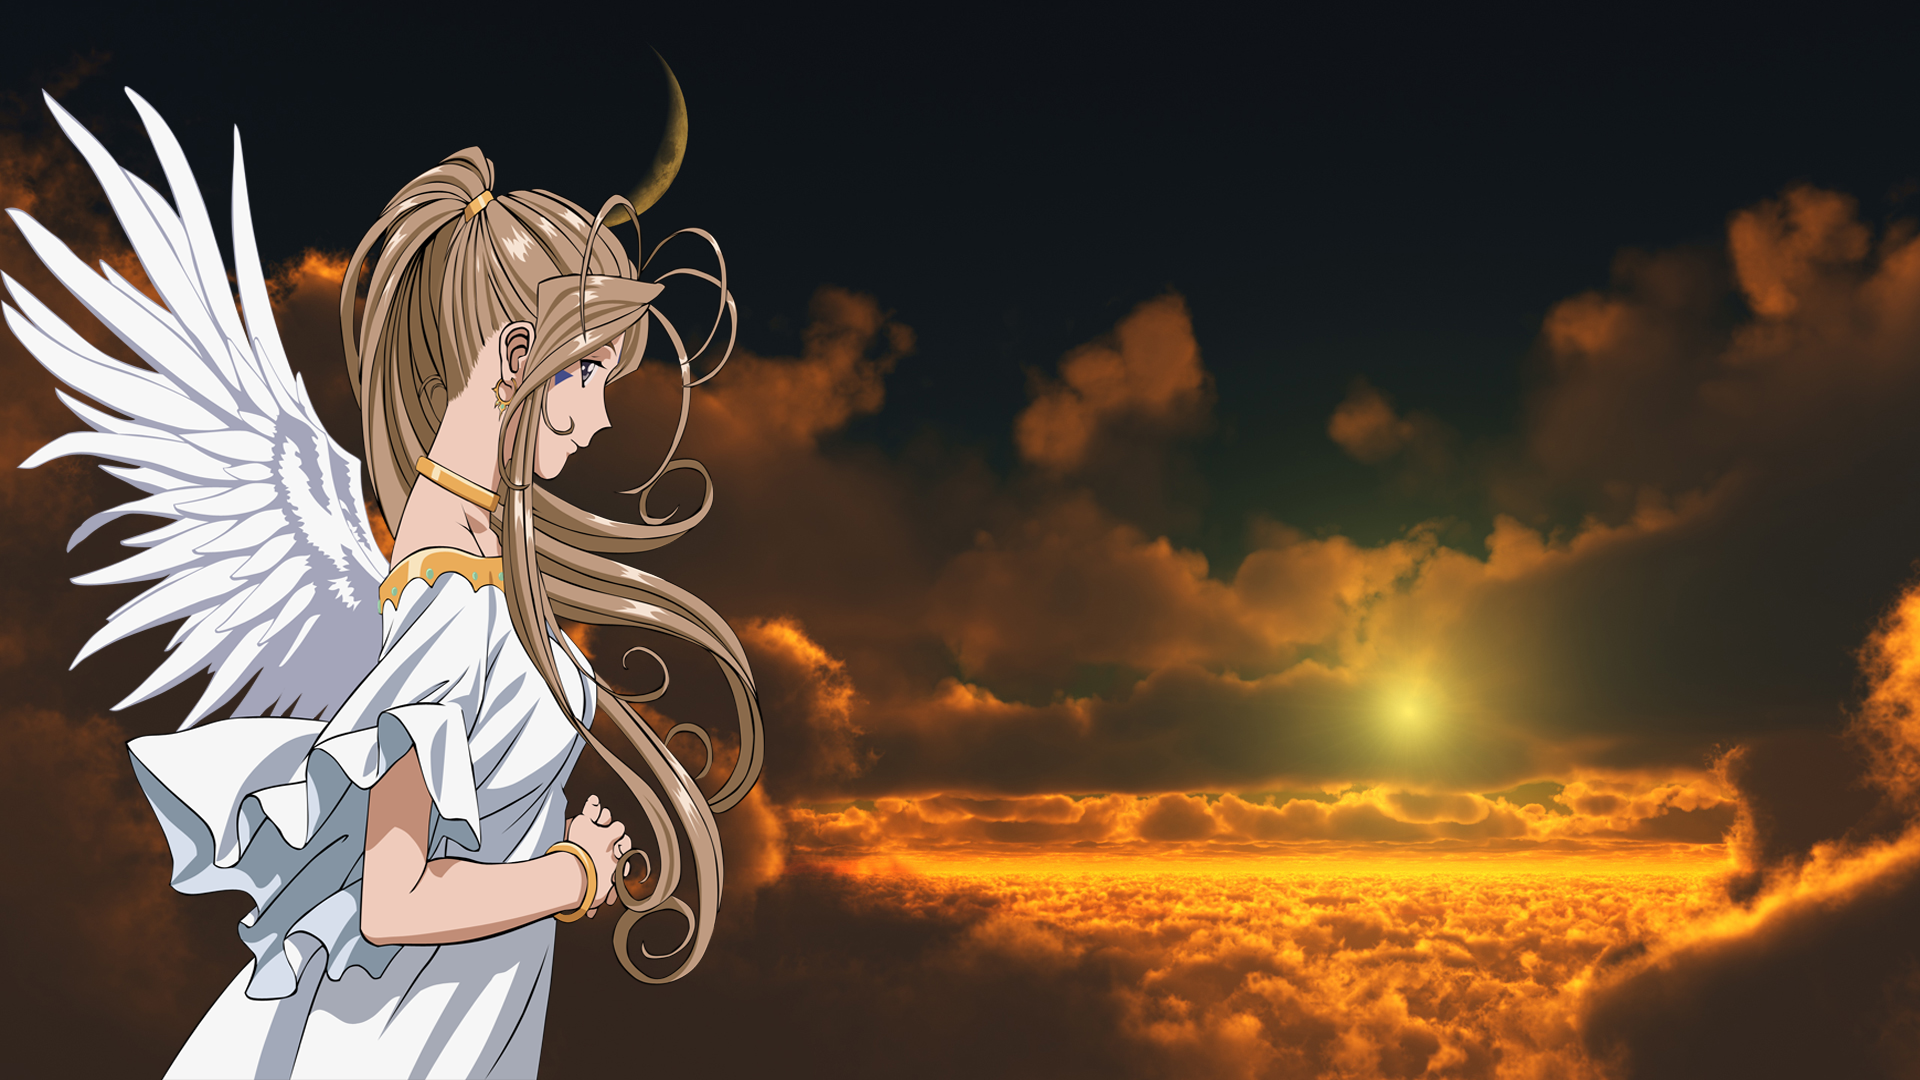 Anime 1920x1080 Belldandy Ah! My Goddess! anime girls anime brunette wings sky long hair fantasy art fantasy girl Sun